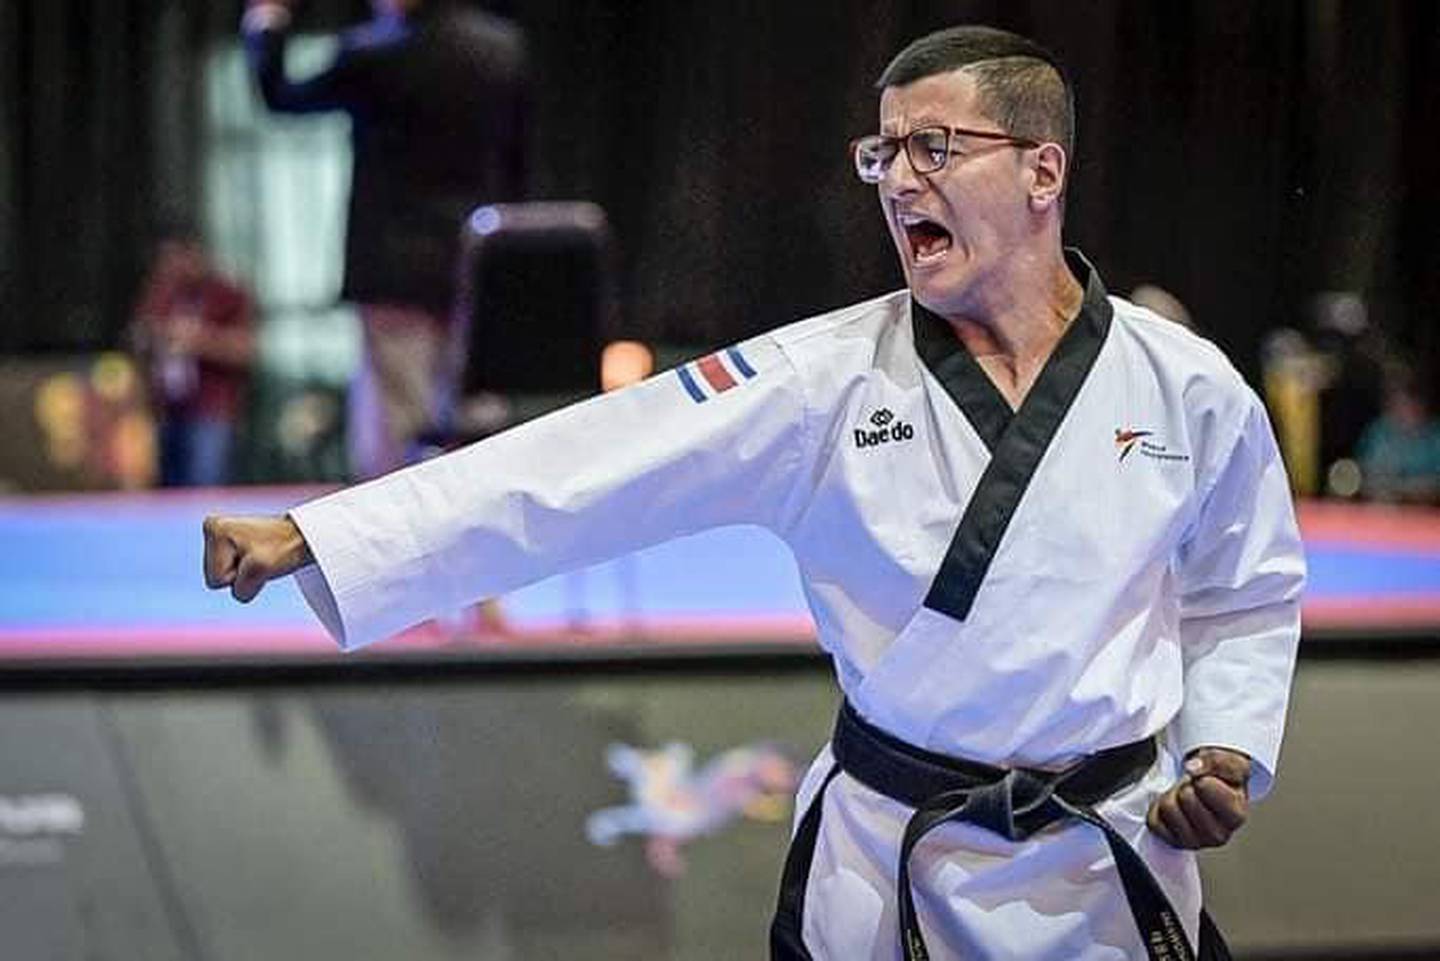 Daniel Matamoros, para taekwondo